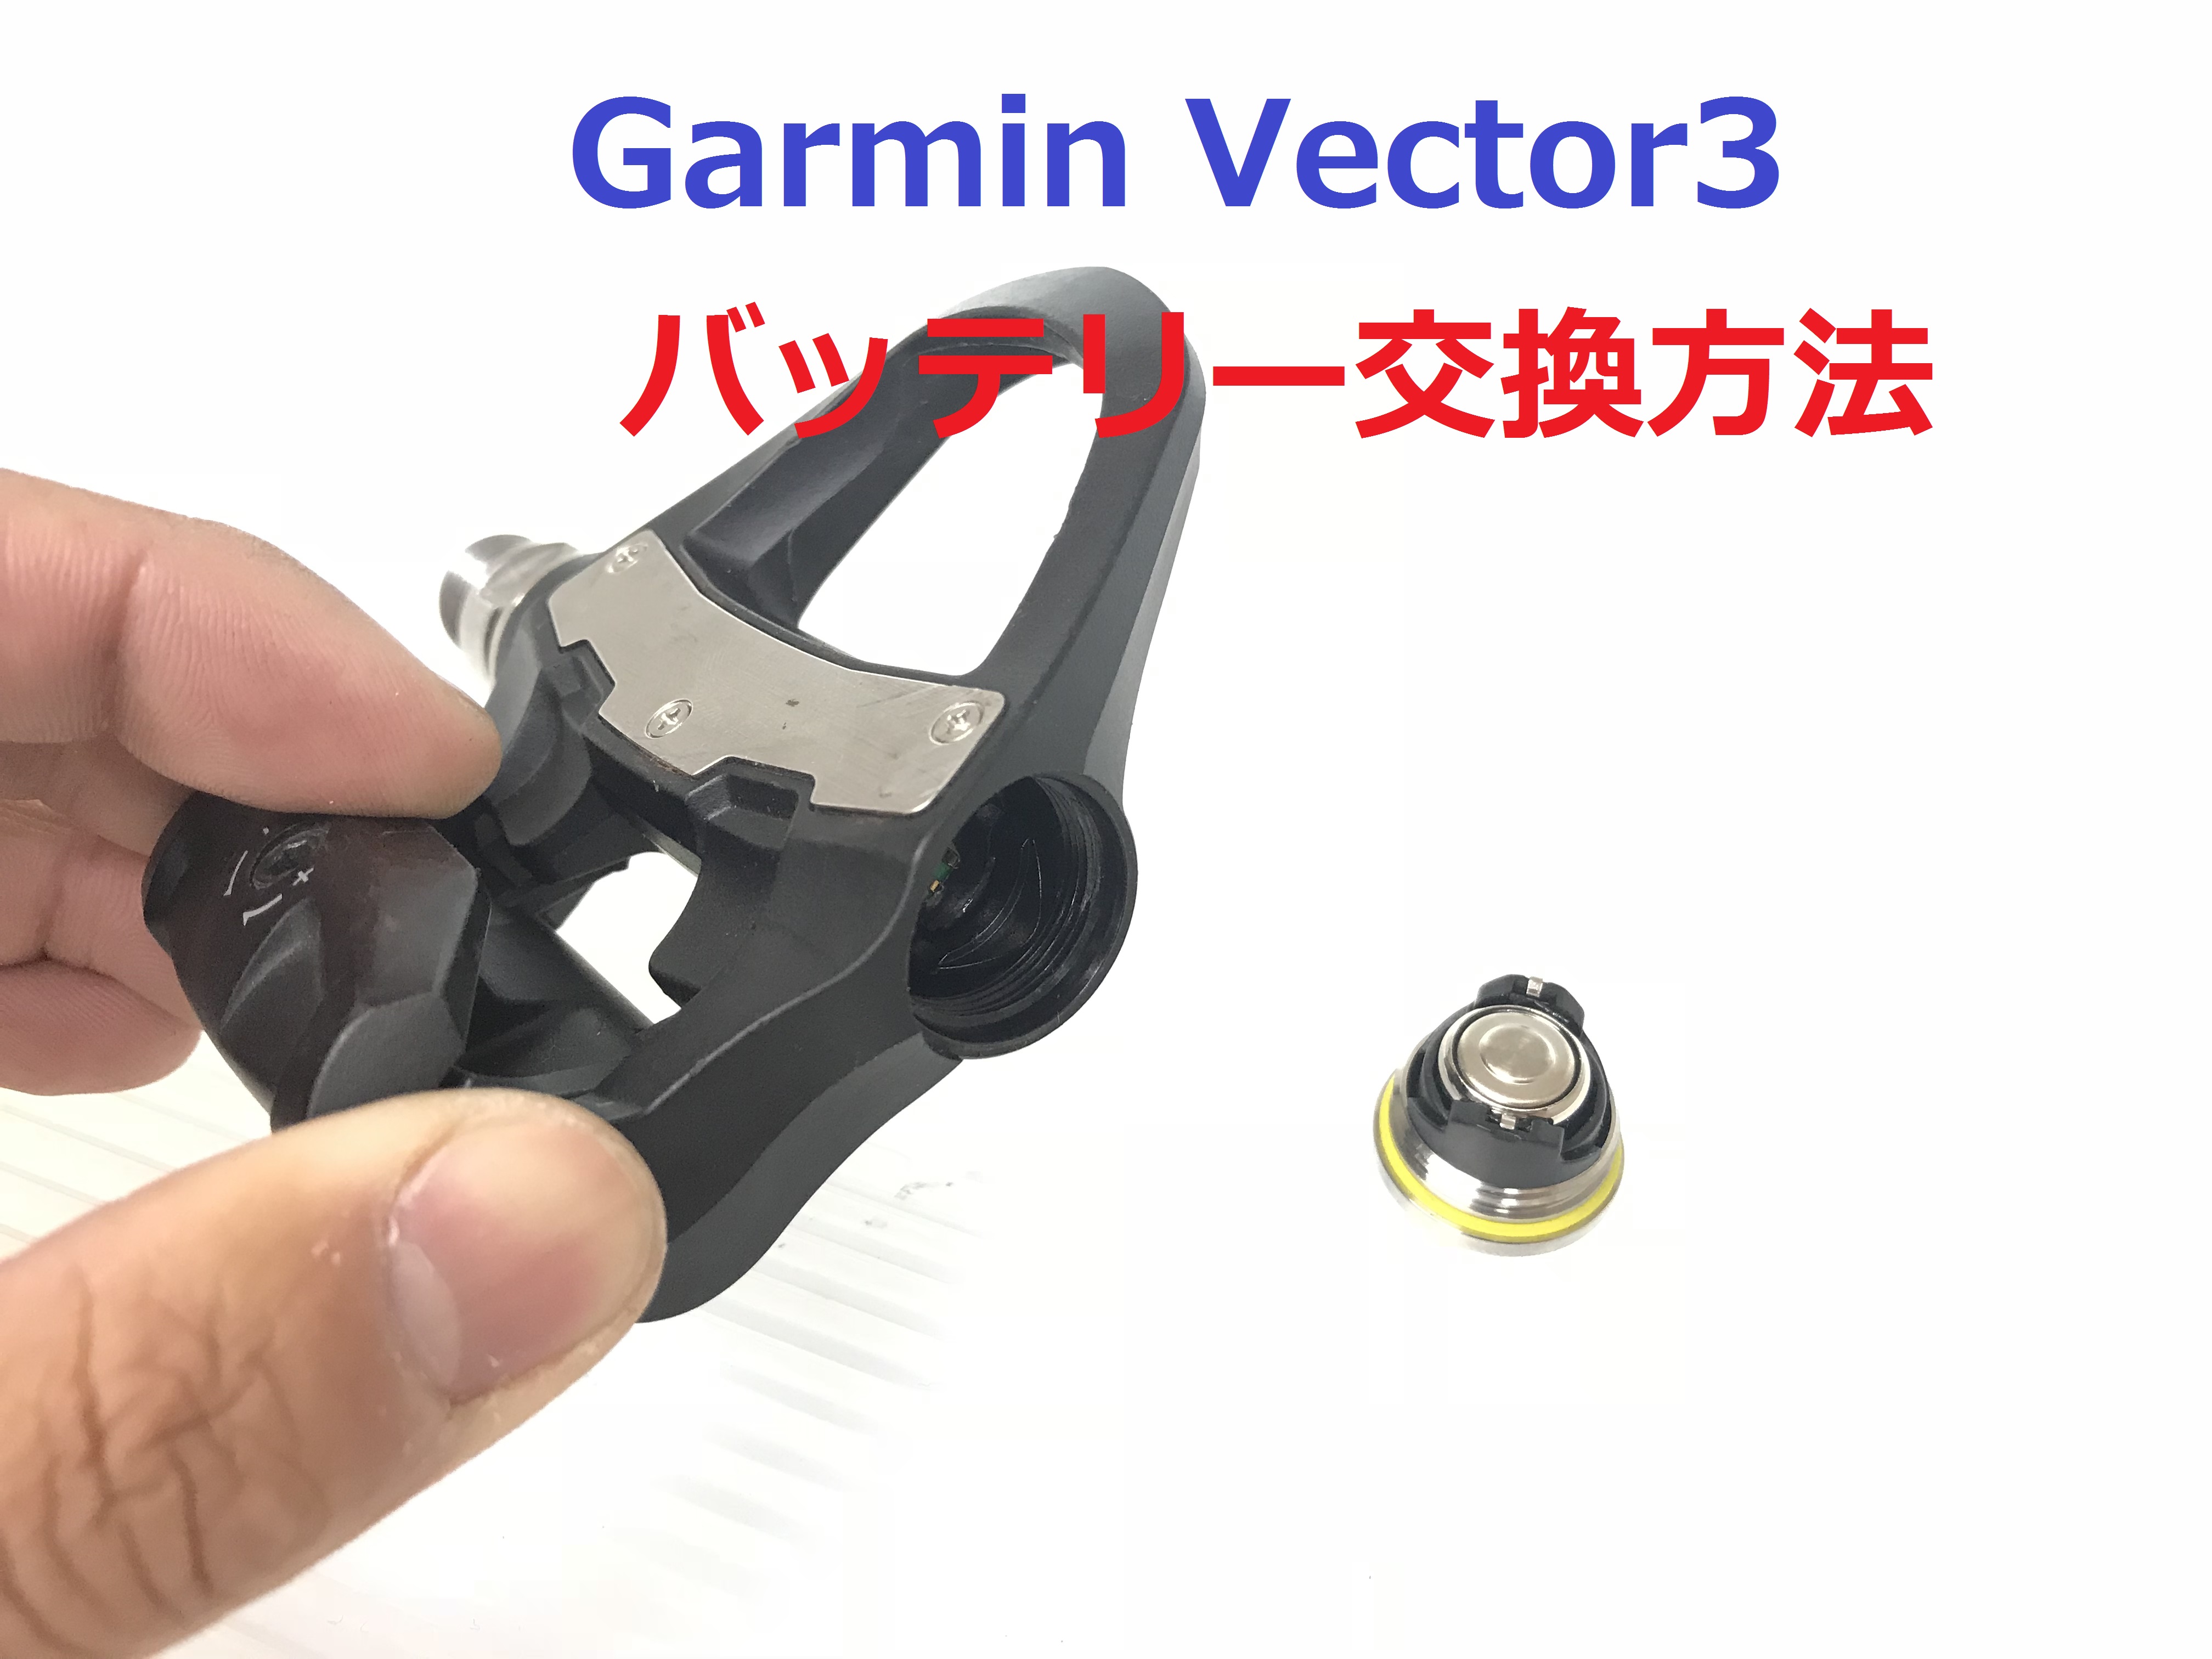 GARMIN VECTOR3 電池交換がどれだけ簡単なのかを紹介